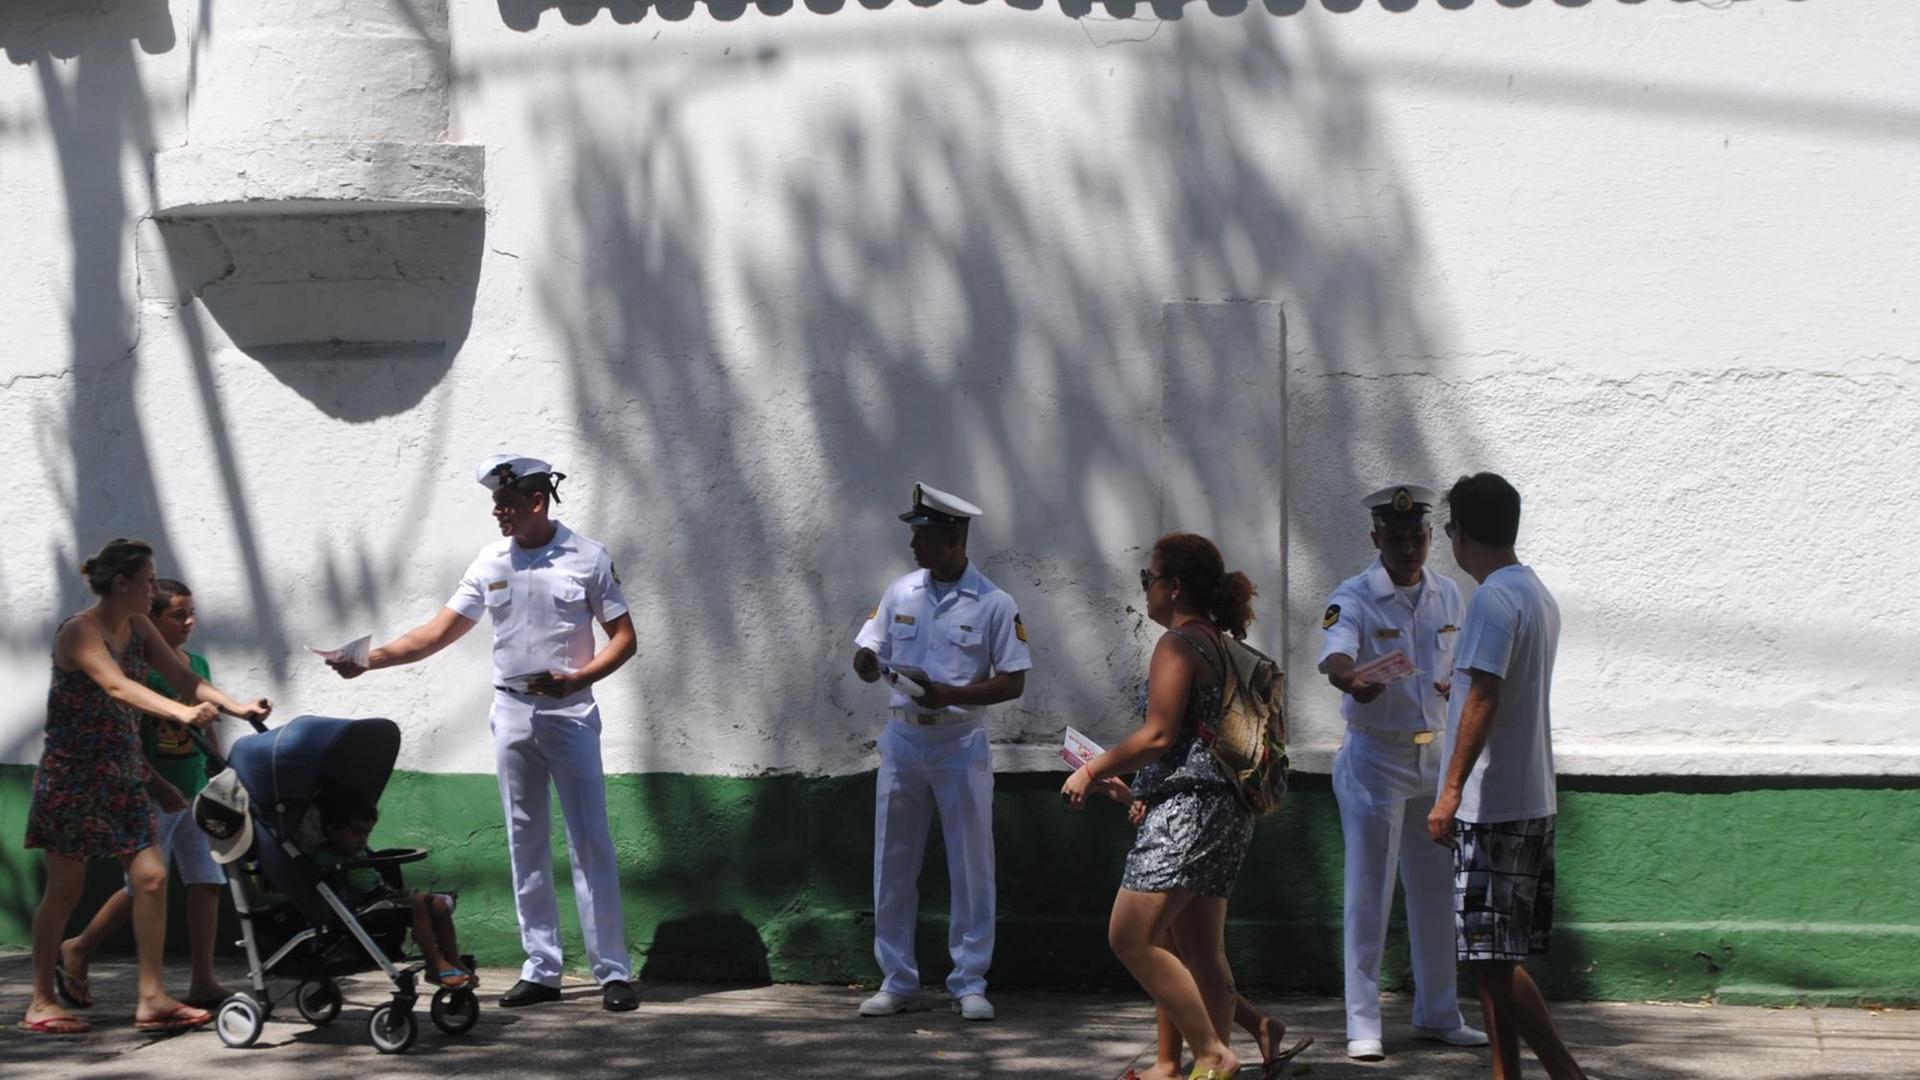 Angehörige der brasilianischen Marine verteilen auf der Straße Zettel an Passanten.